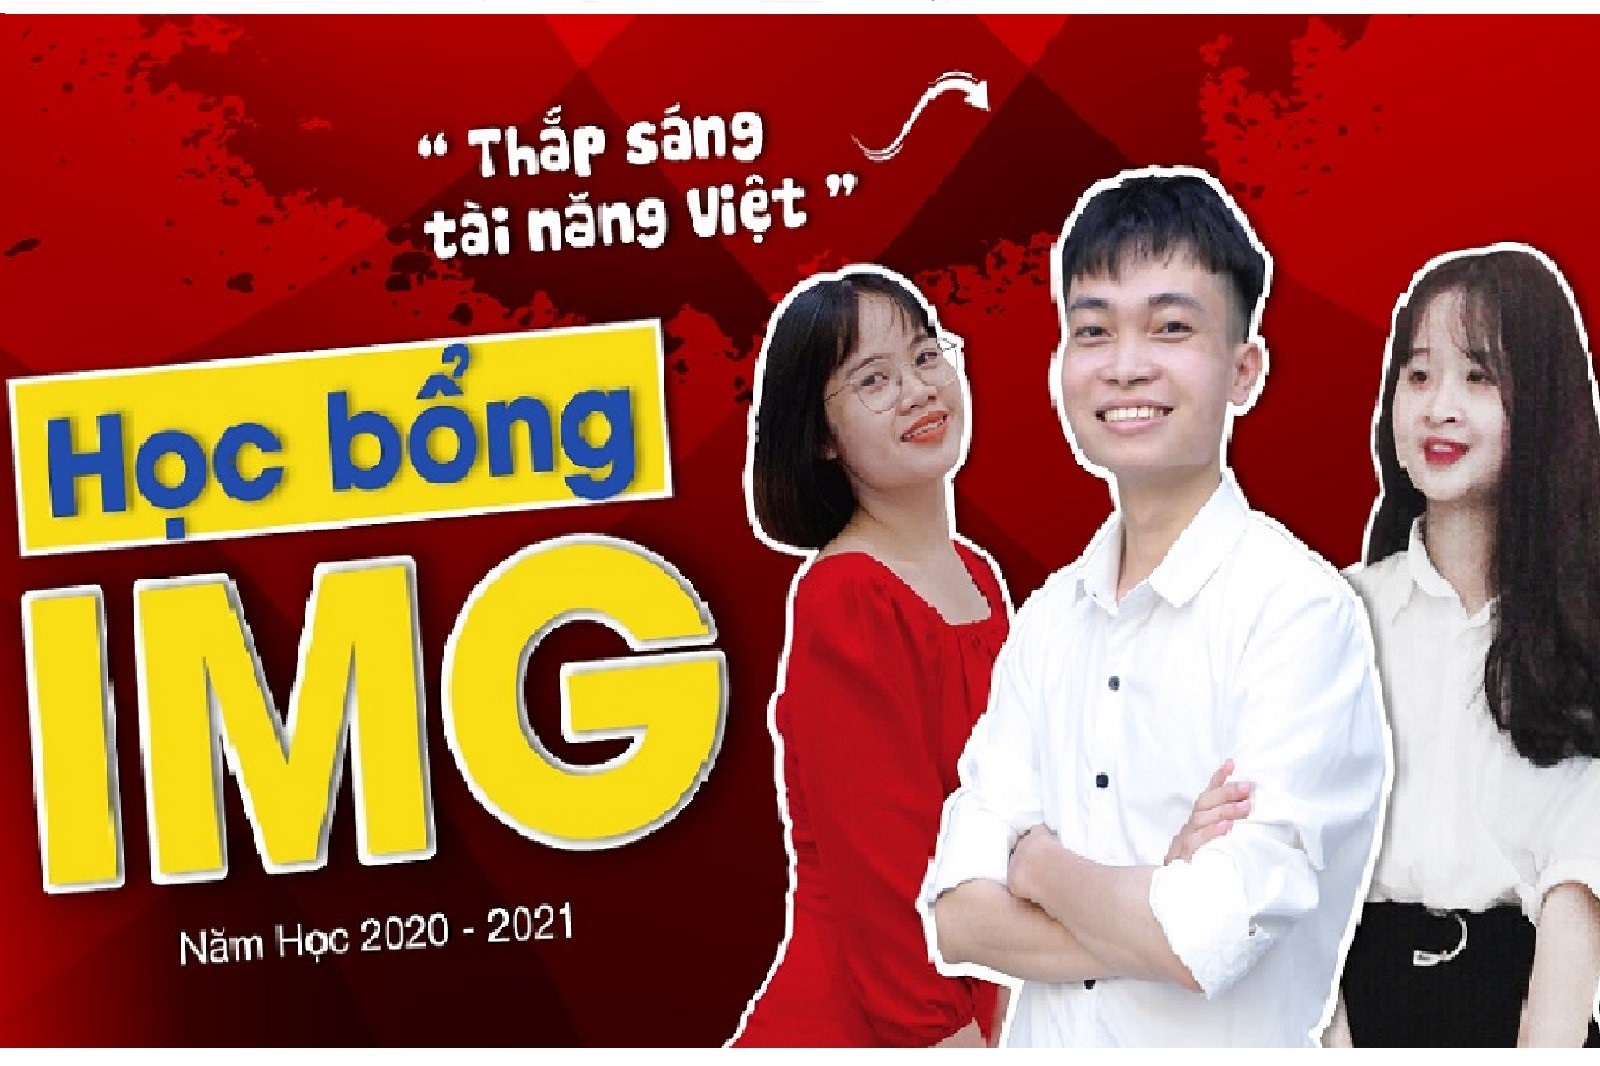 Học bổng “Thắp sáng Tài năng Việt” 2021: “Trái ngọt” dành tặng những nỗ lực xứng đáng